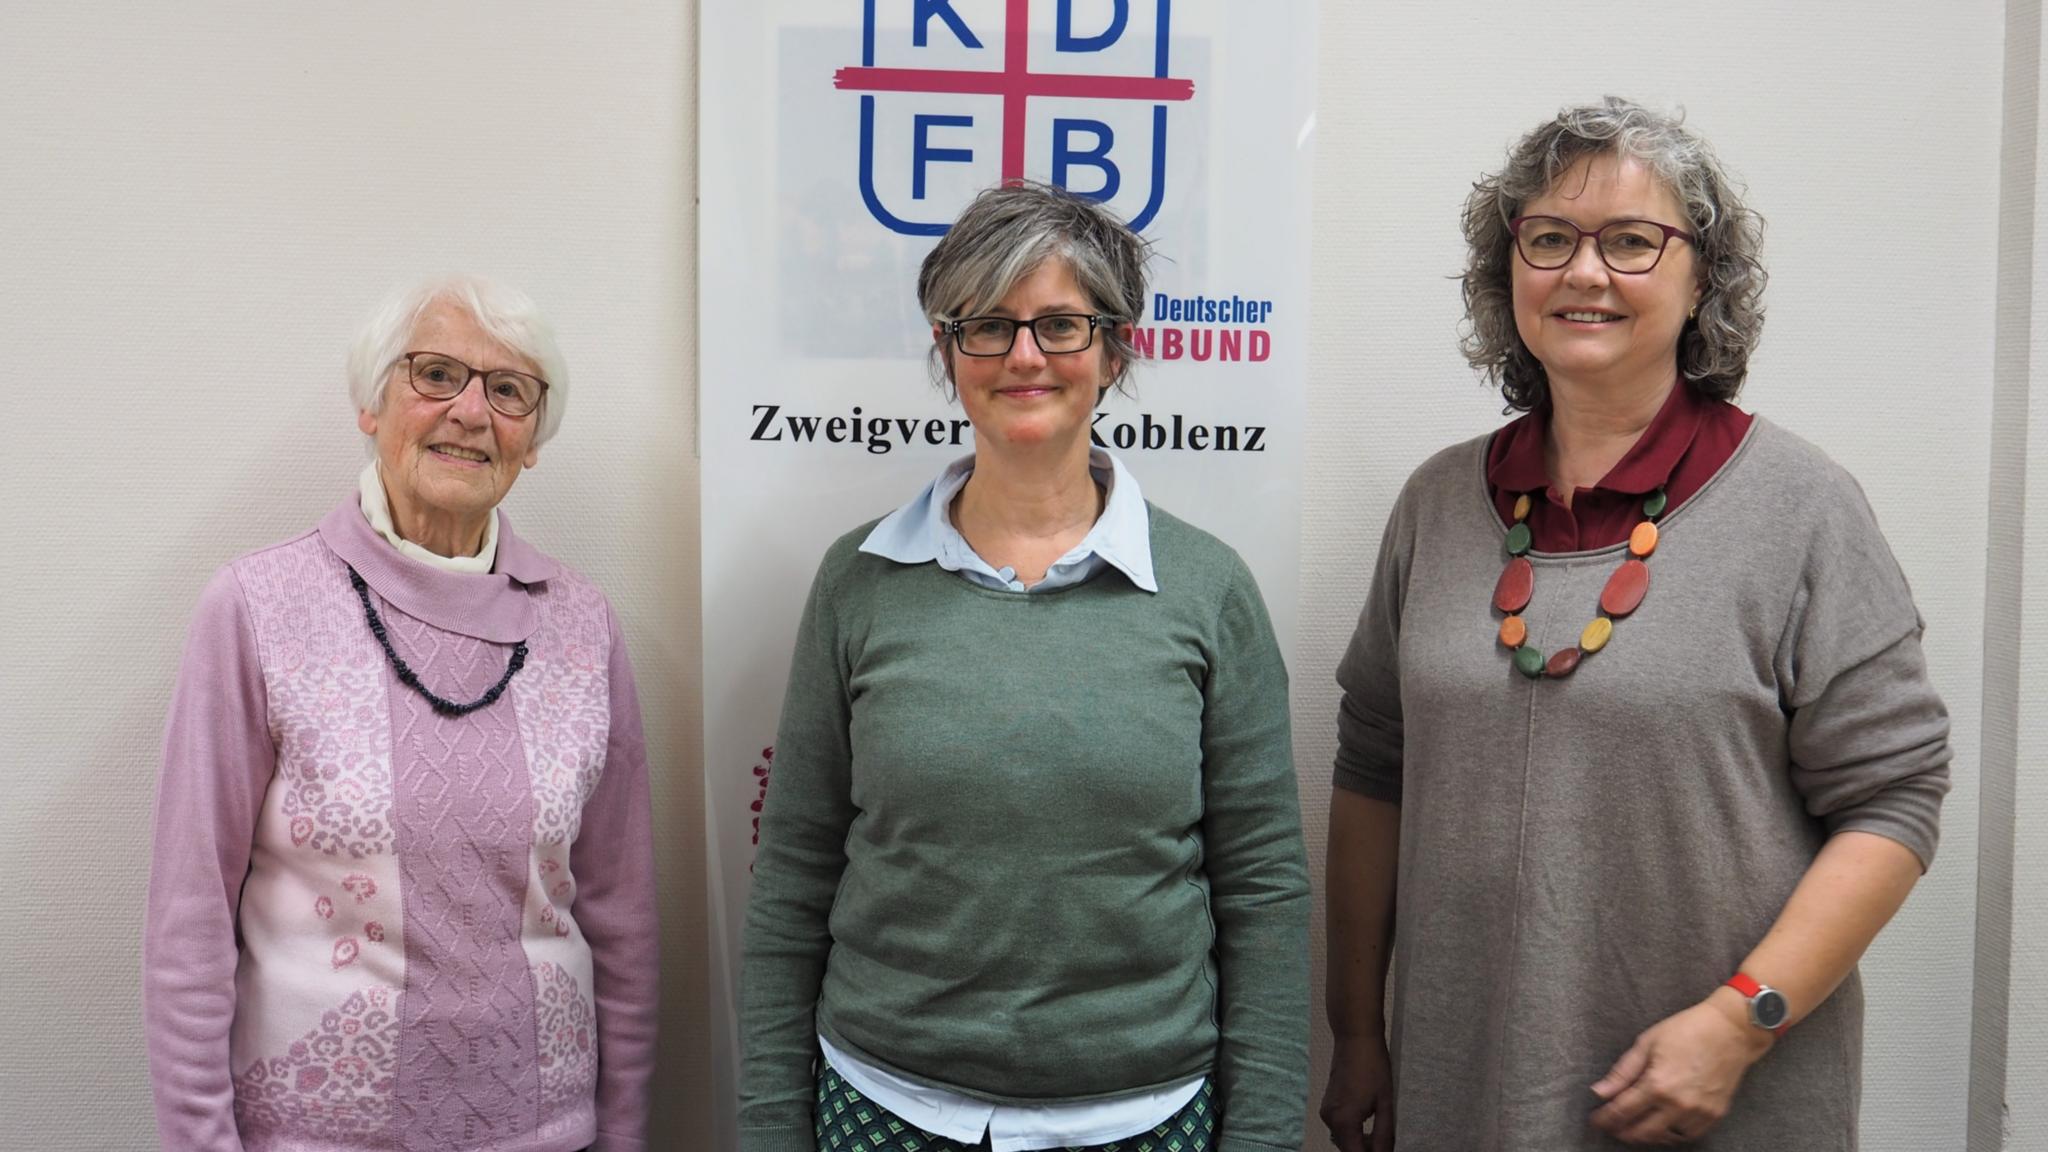 Die Referentin Birgit Mock (Mitte) mit Theodora Wenzel vom KDFB-Zweigverein Koblenz (links) und der KDFB-Diözesanvorsitzenden Dr. Jutta Mader (rechts). Foto: Stefan Endres/Bistum Trier